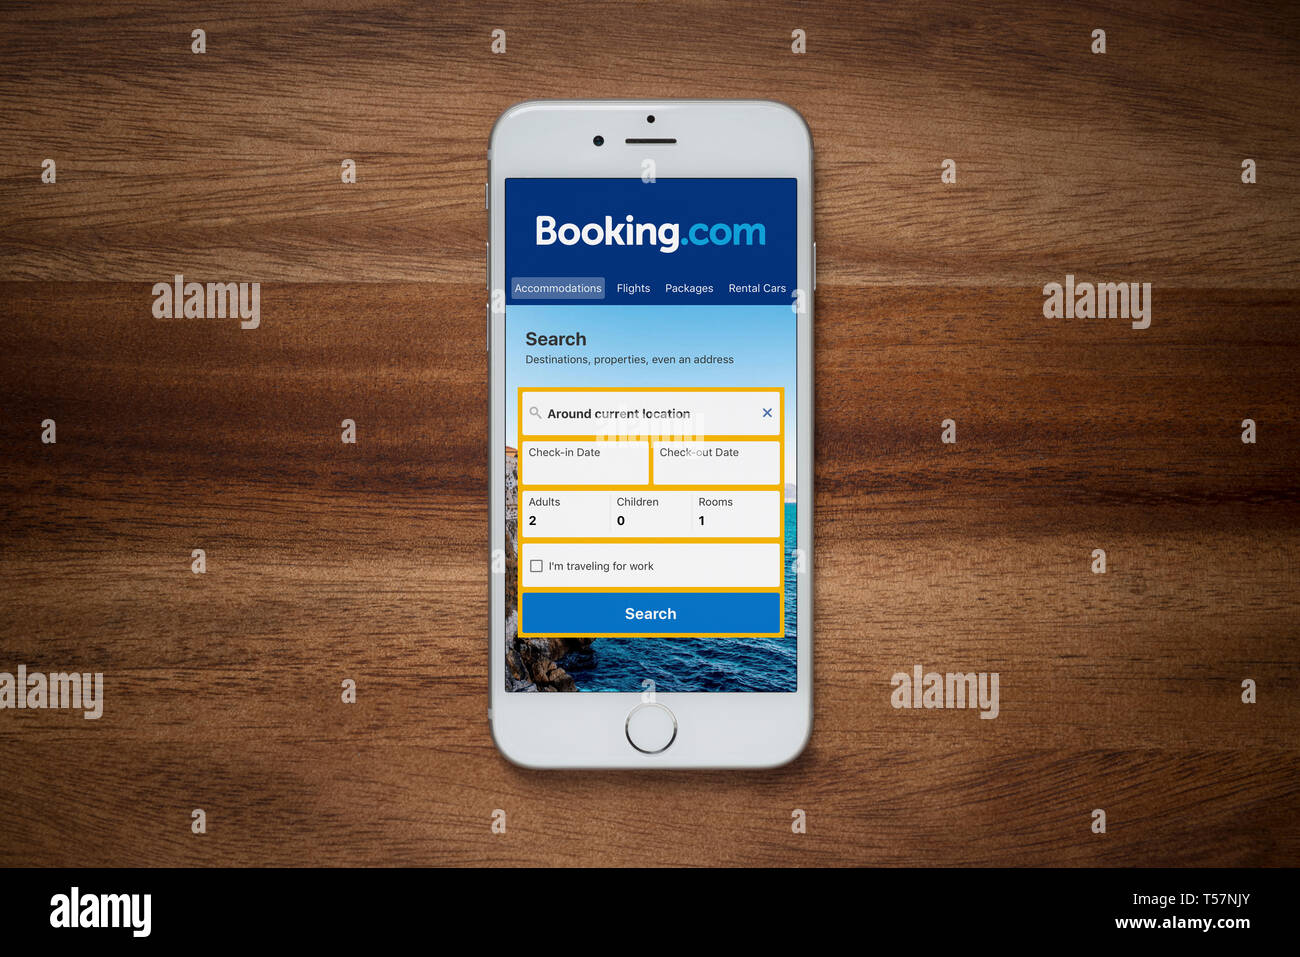 Ein iPhone zeigt die Booking.com Webseite beruht auf einem einfachen Holztisch (nur redaktionelle Nutzung). Stockfoto